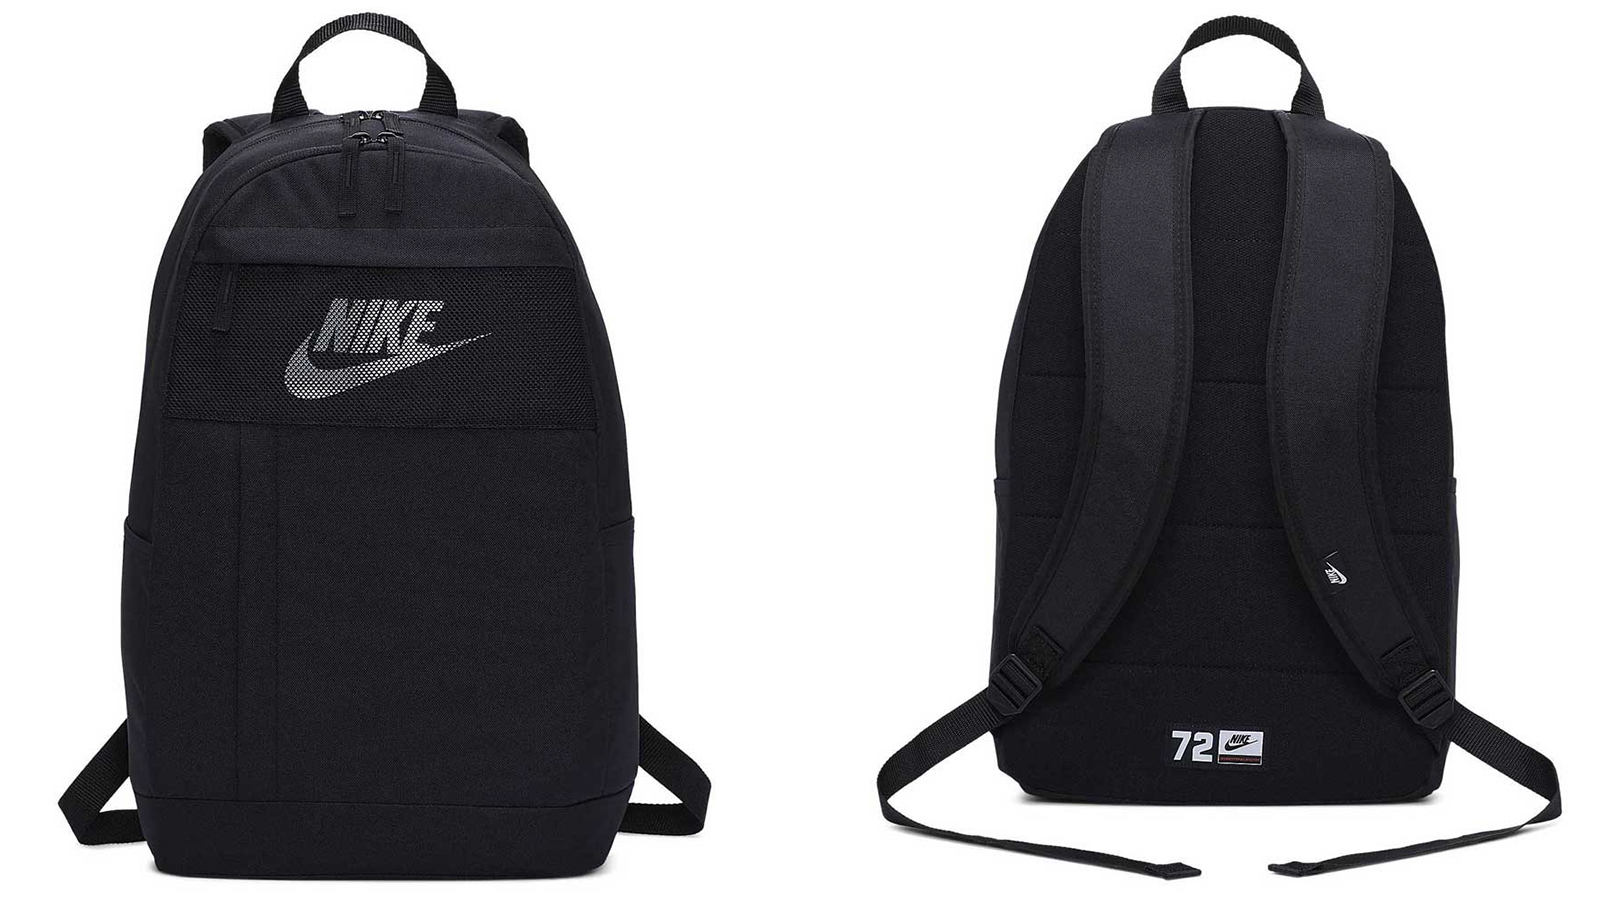 Ba lô Nike Elemental BA5878 Backpack - sản phẩm không thể thiếu cho những người yêu thích sự thoải mái, tiện dụng và đẳng cấp của thương hiệu Nike.